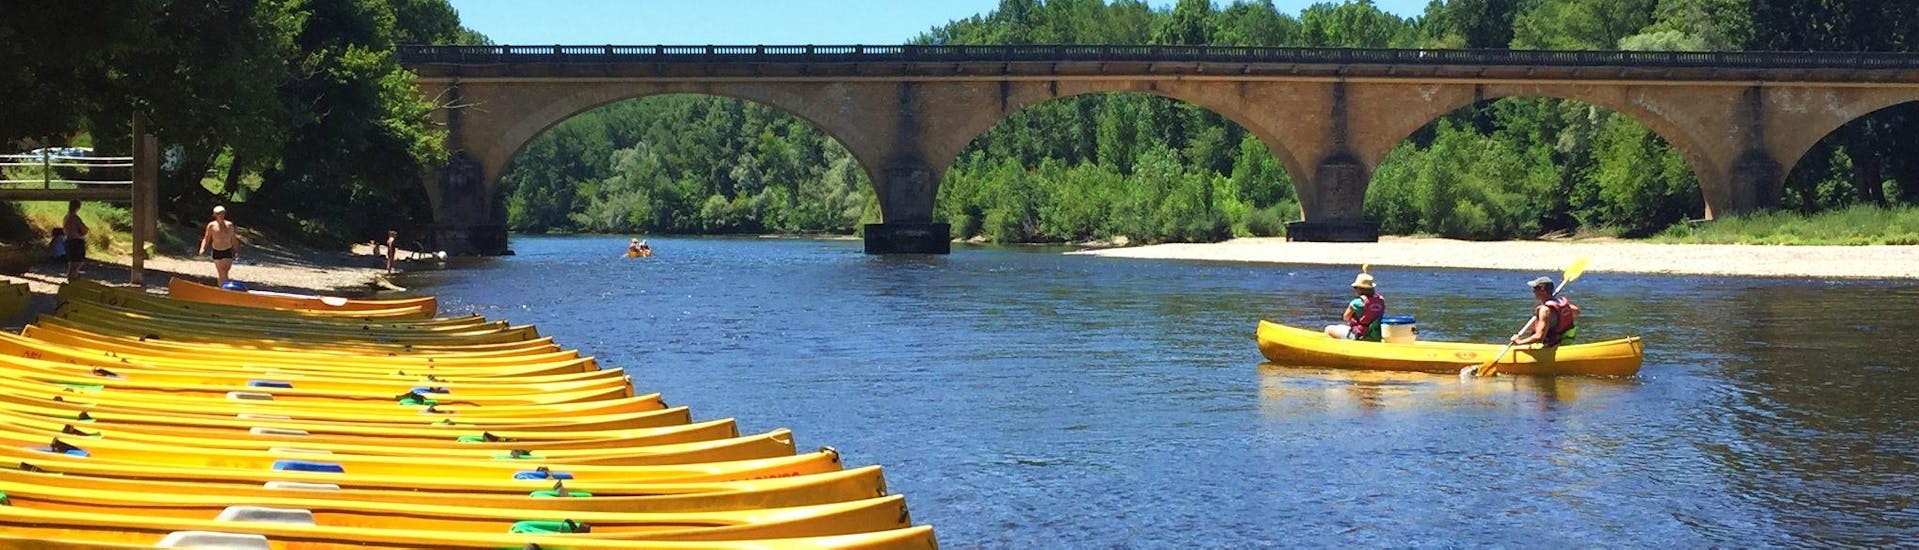 Alcuni partecipanti pagaiano sul fiume Dordogna durante il Noleggio kayak e canoa sulla Dordogna - tour 19 km nel verde con Canoës Loisirs Dordogne.